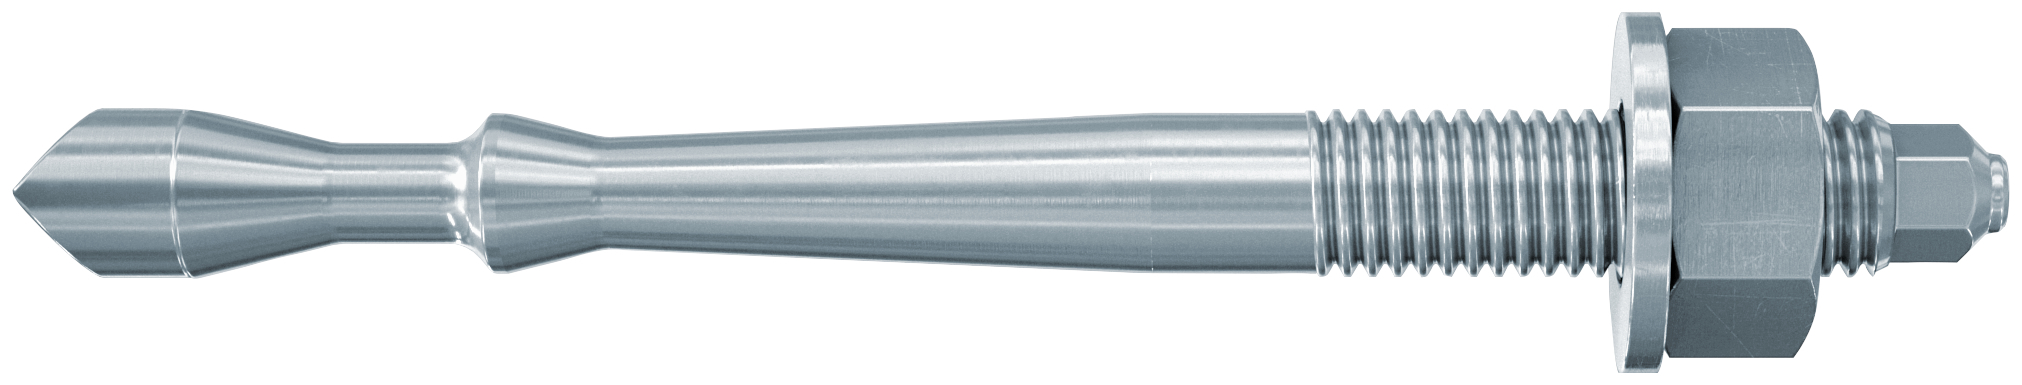 fischer Barra multicono in acciaio FHB II-A S M10x60-20 per ancorante chimico FIS HB (1 Pz.) Barra multicono corta in acciaio zincato classe 8.8.Massime prestazioni a trazione in calcestruzzo fessurato e a ridotte distanze dai bordi. fie1172